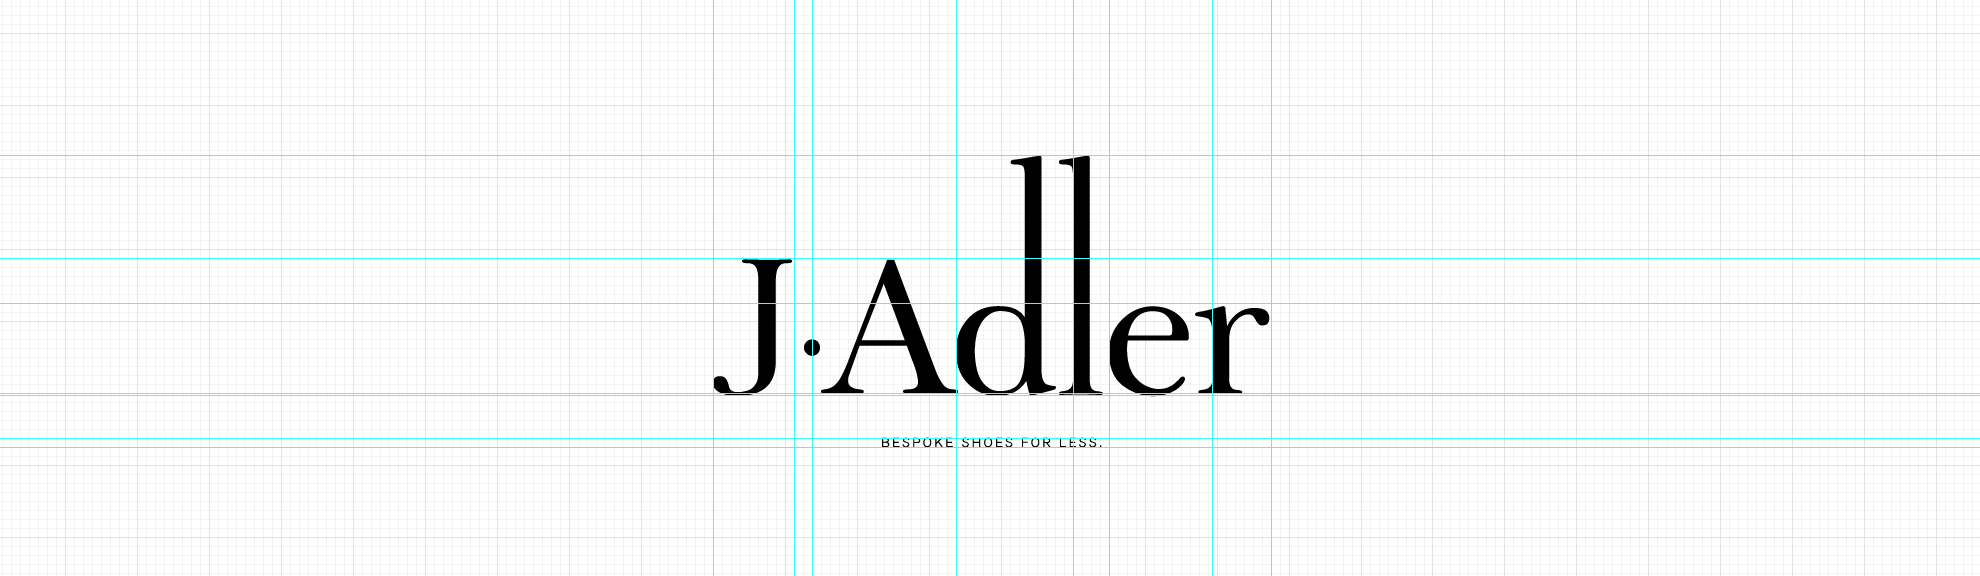 jadler-logo-photoshop